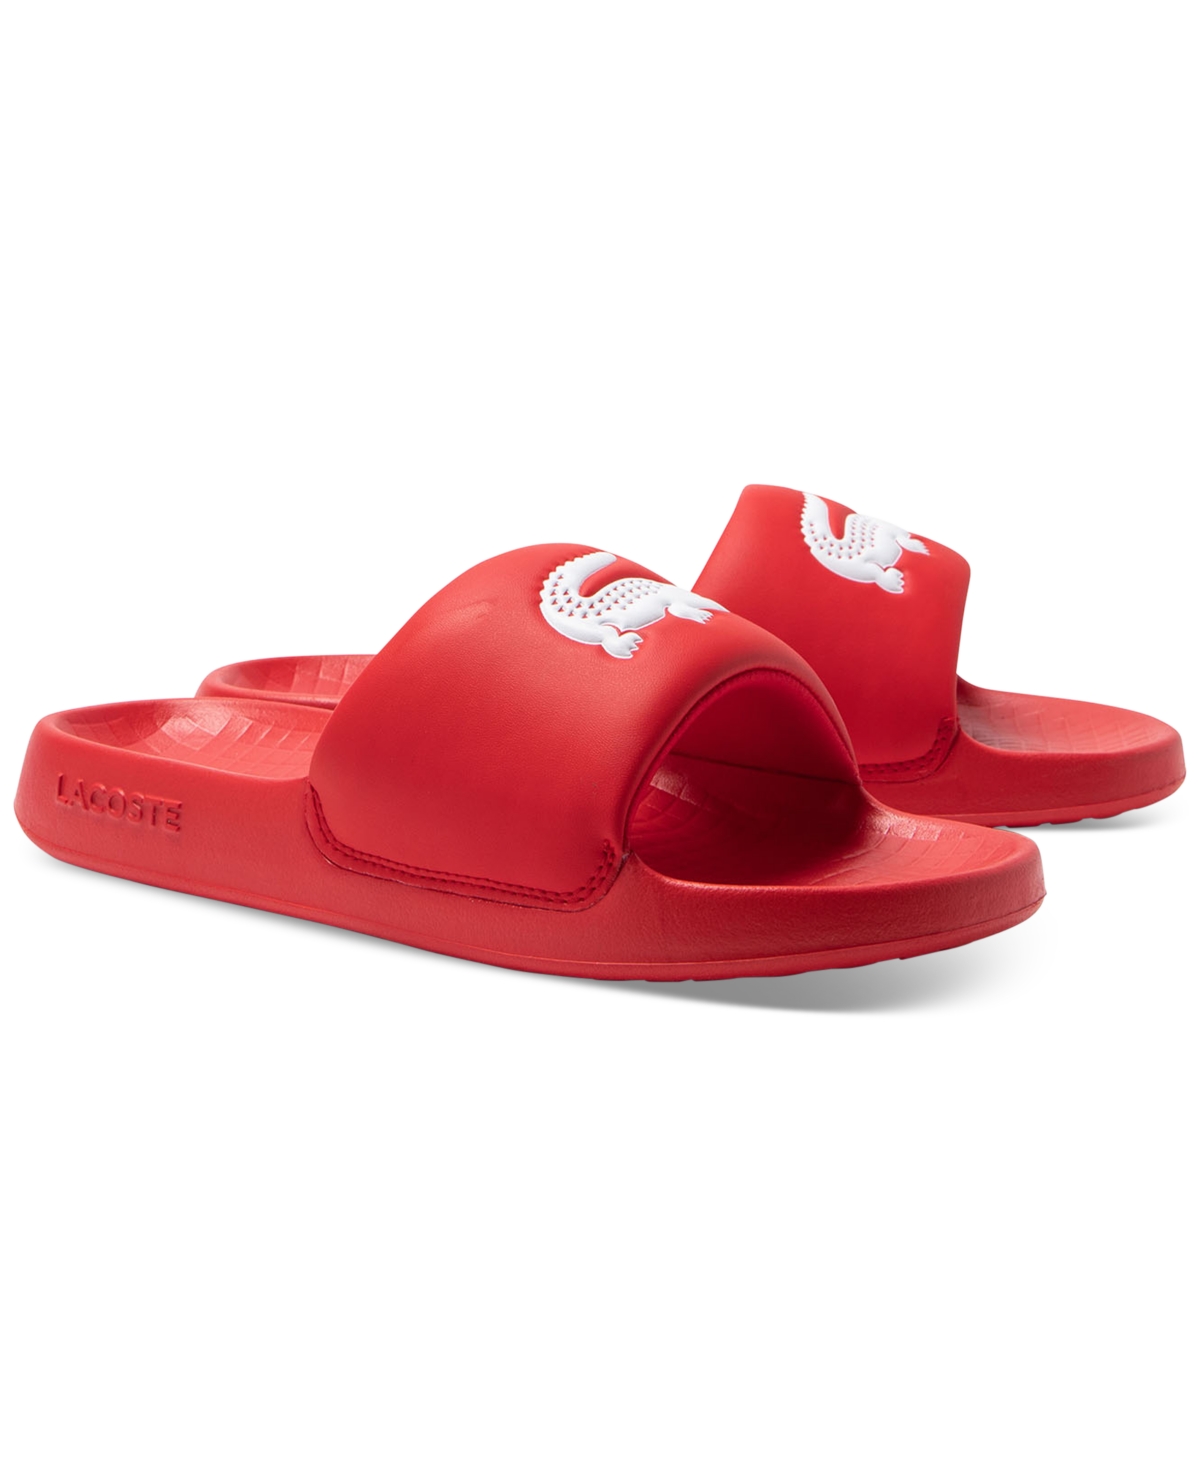 Men's Croco 1.0 Slip-On Slide Sandals - Black/White